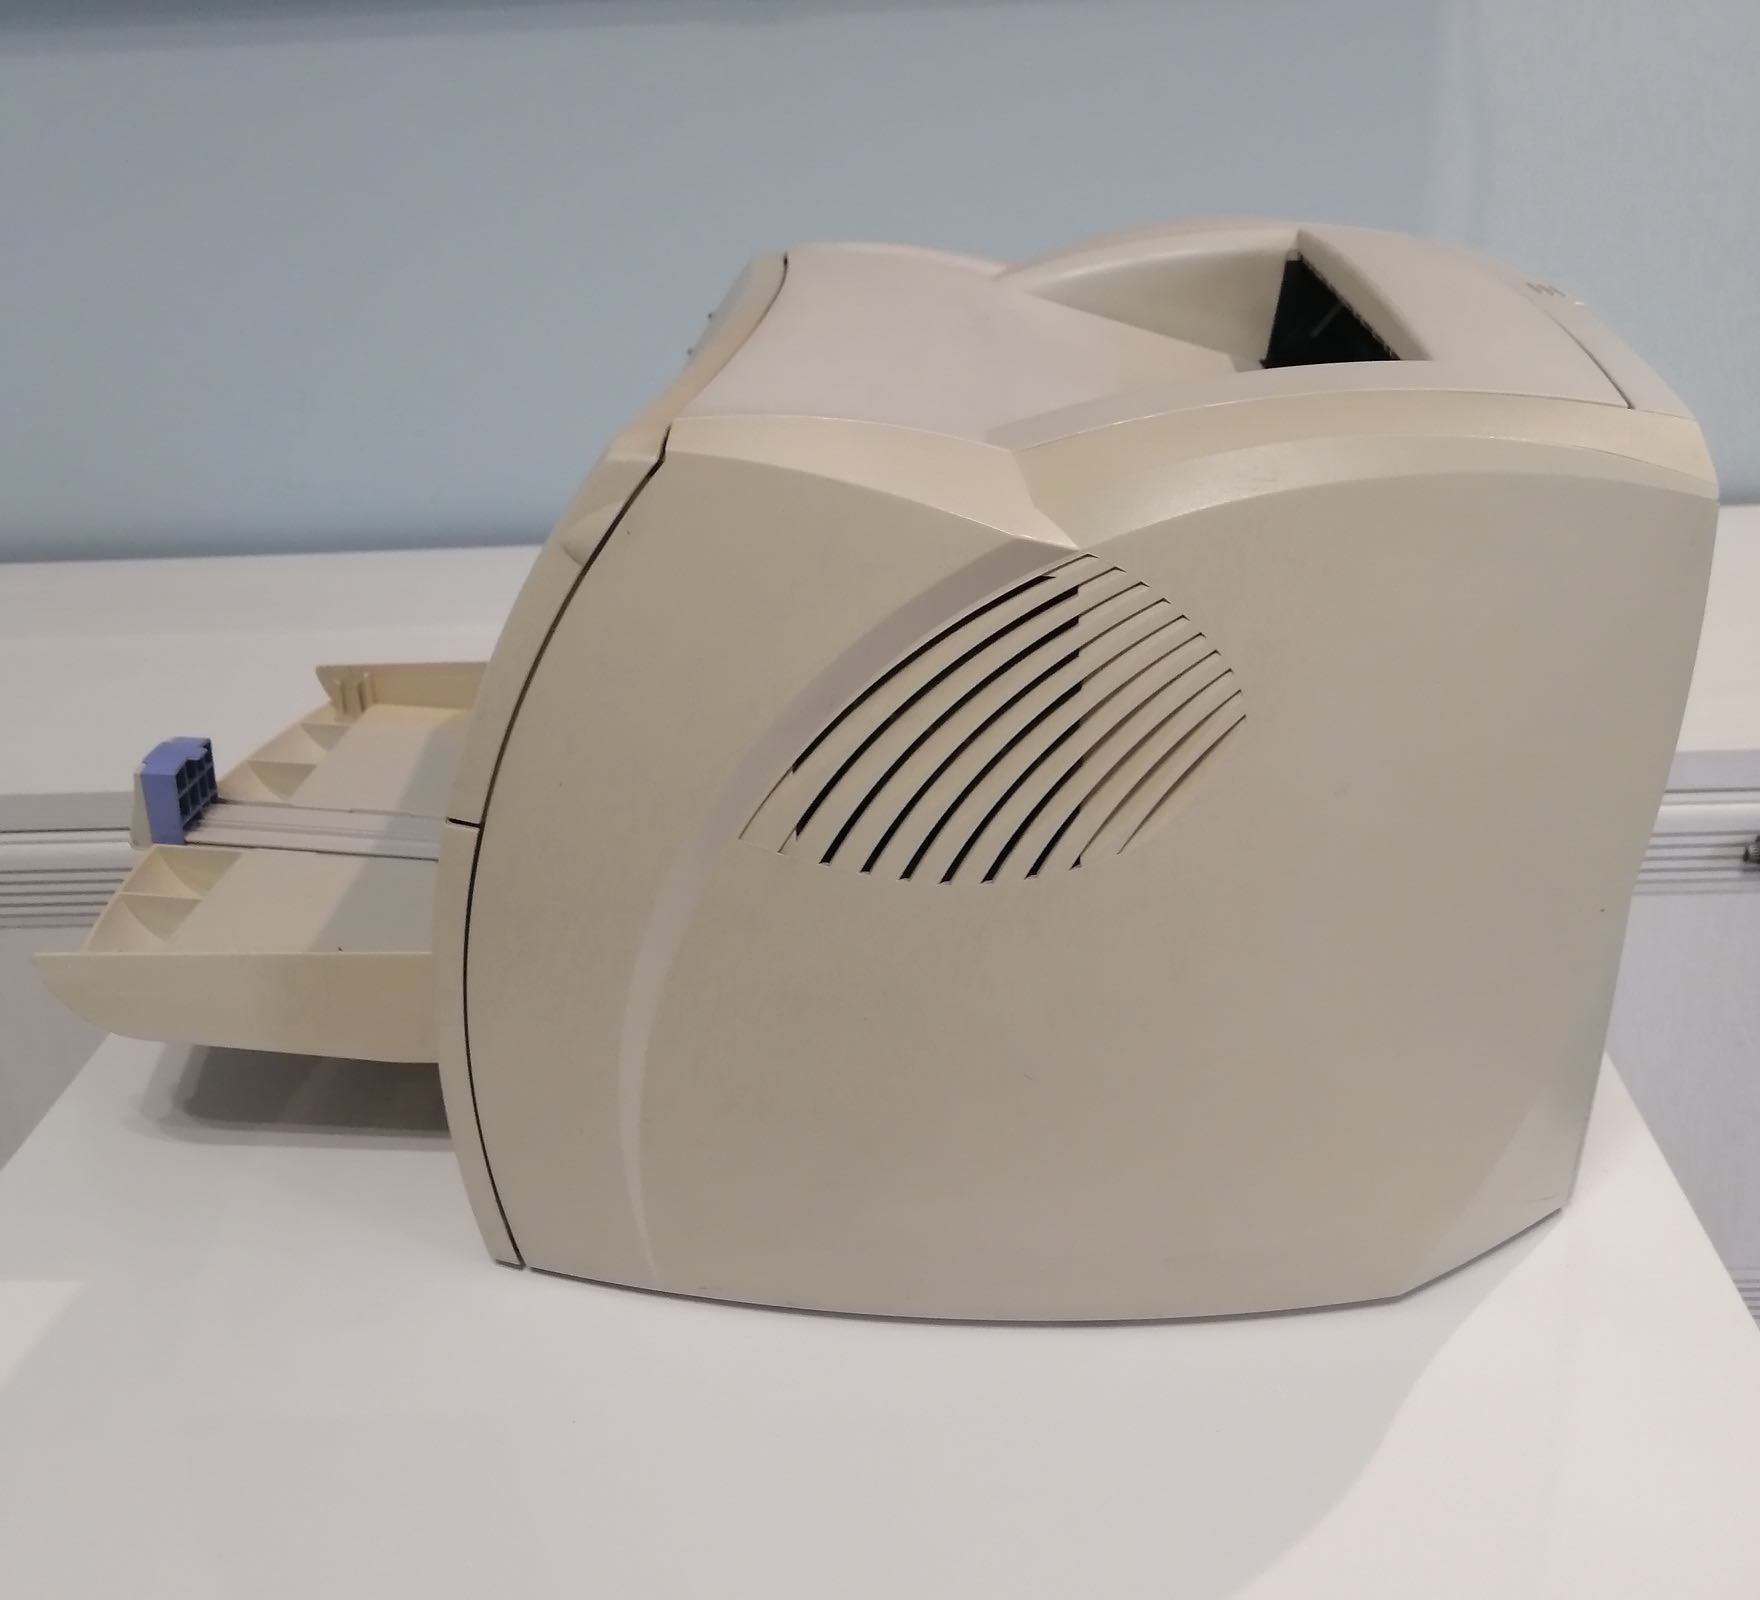 Принтер HP LaserJet 1000